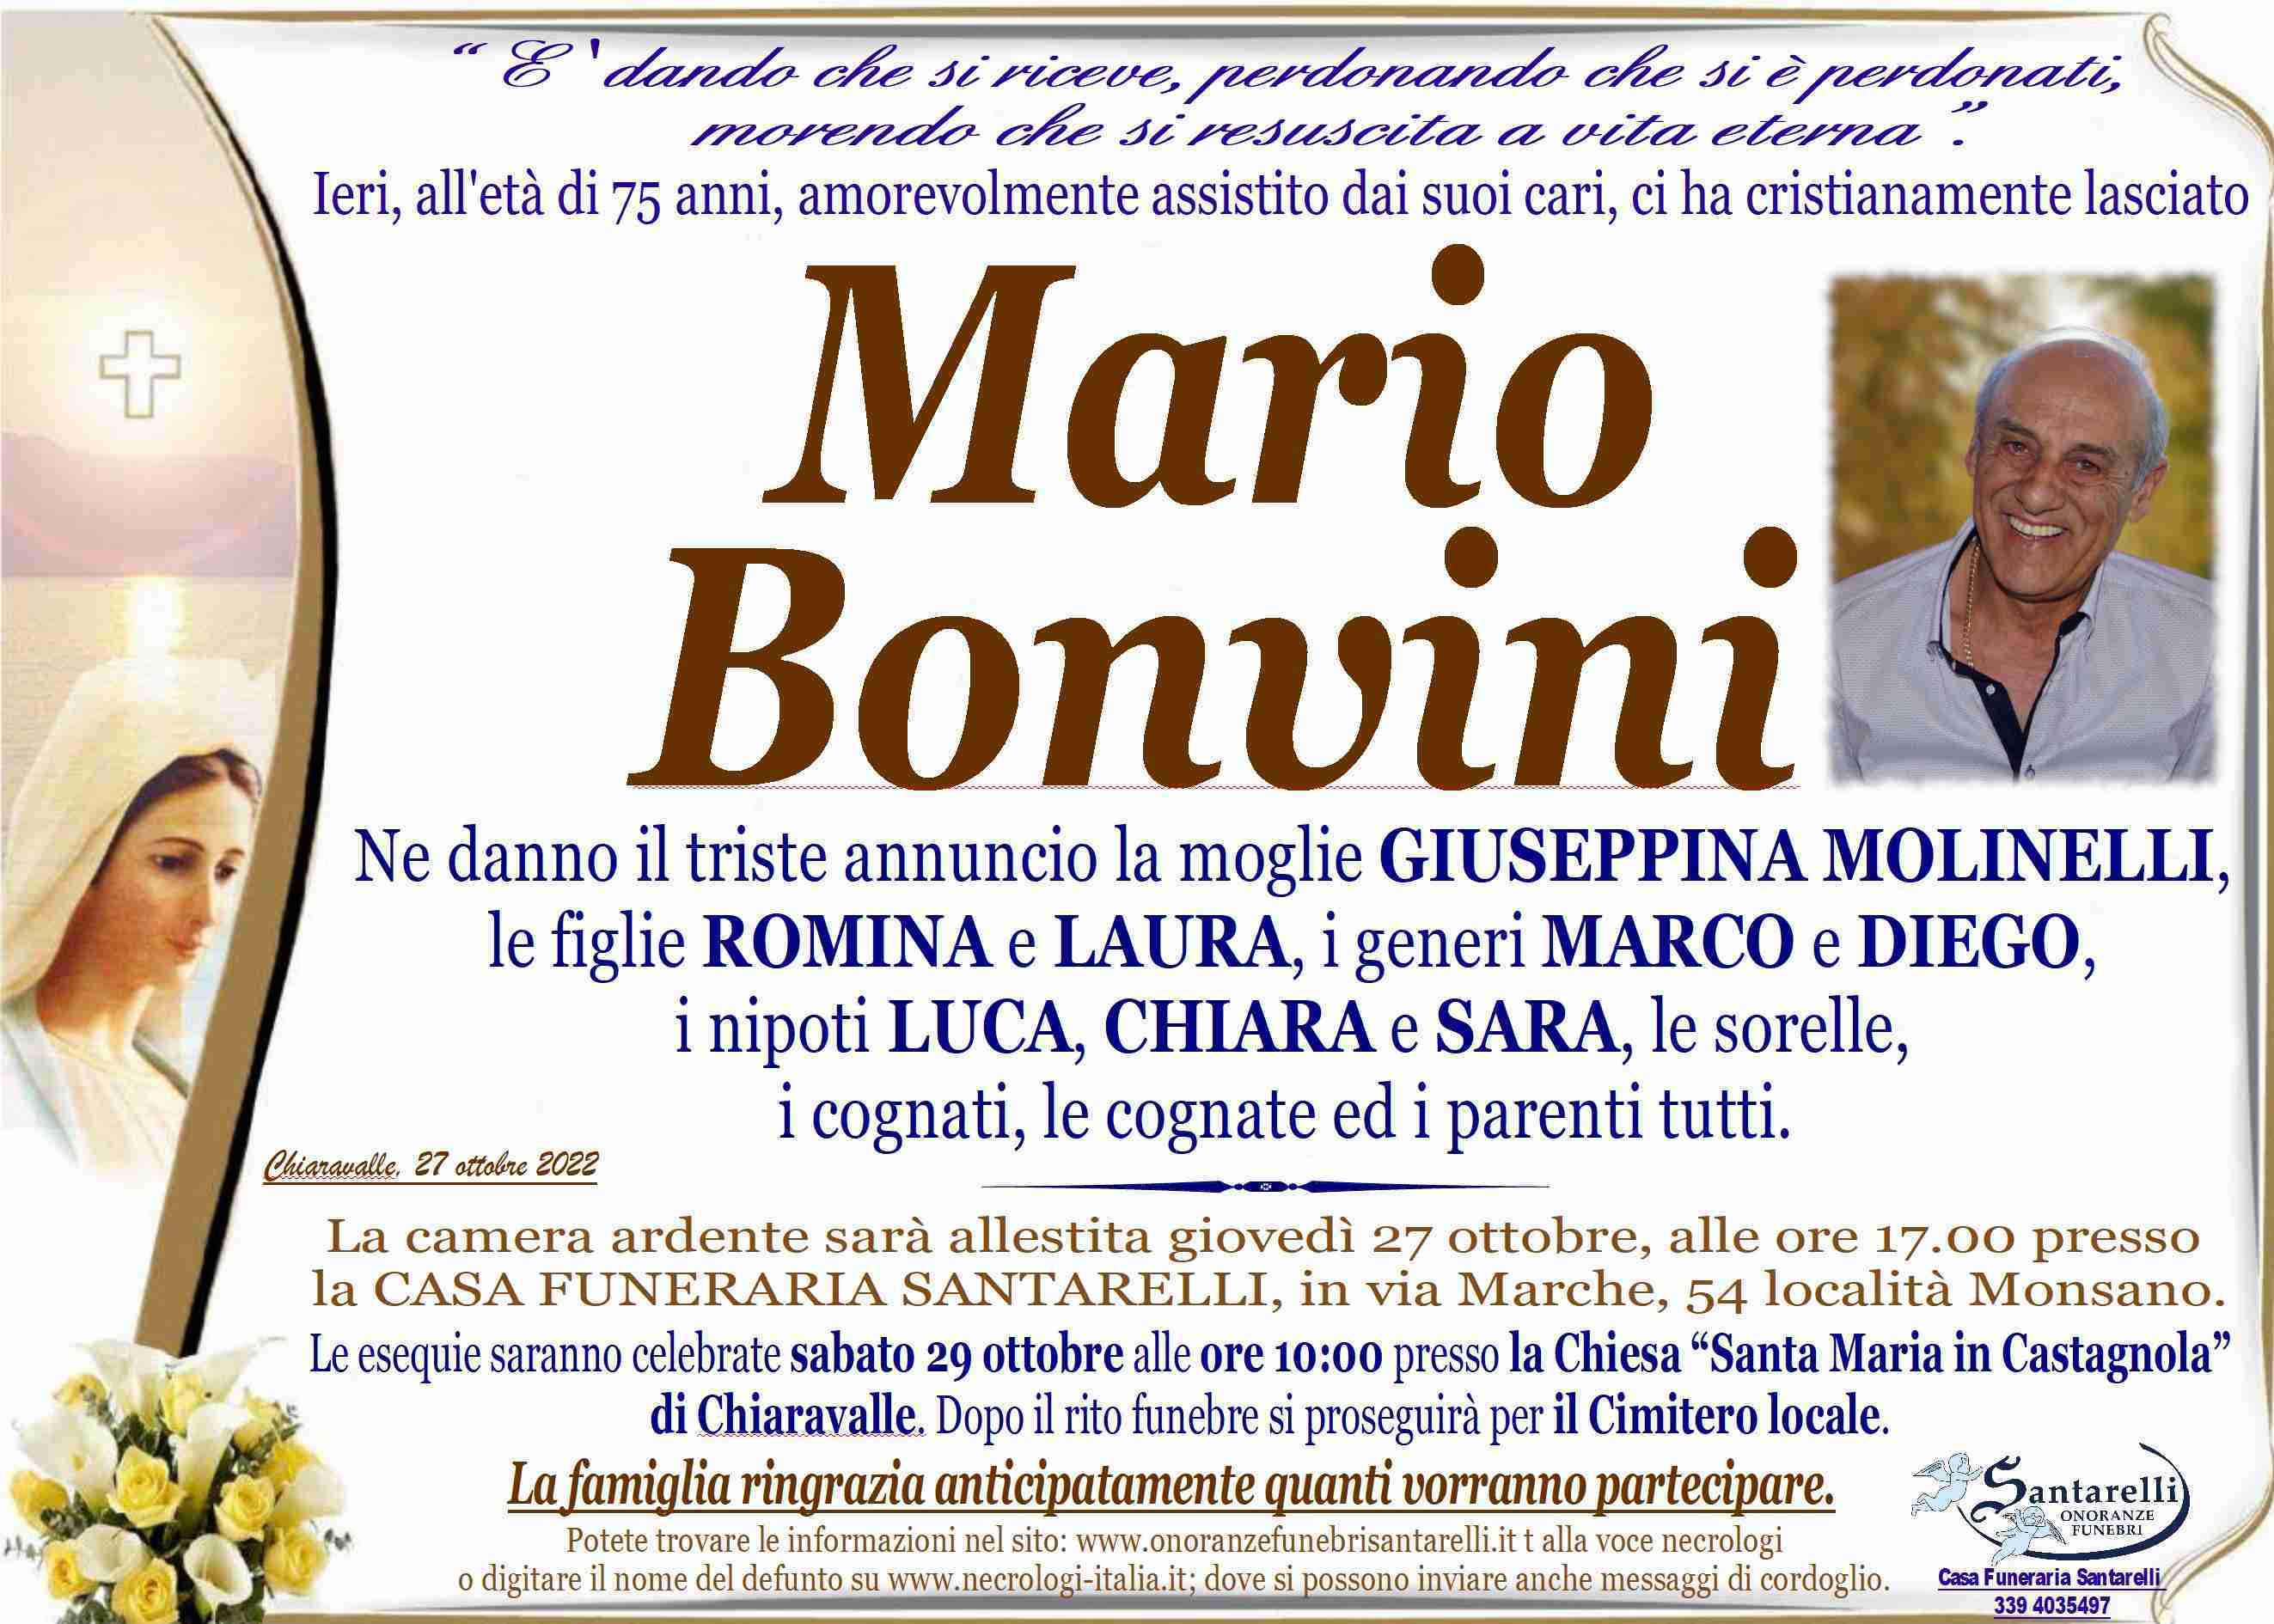 Mario Bonvini